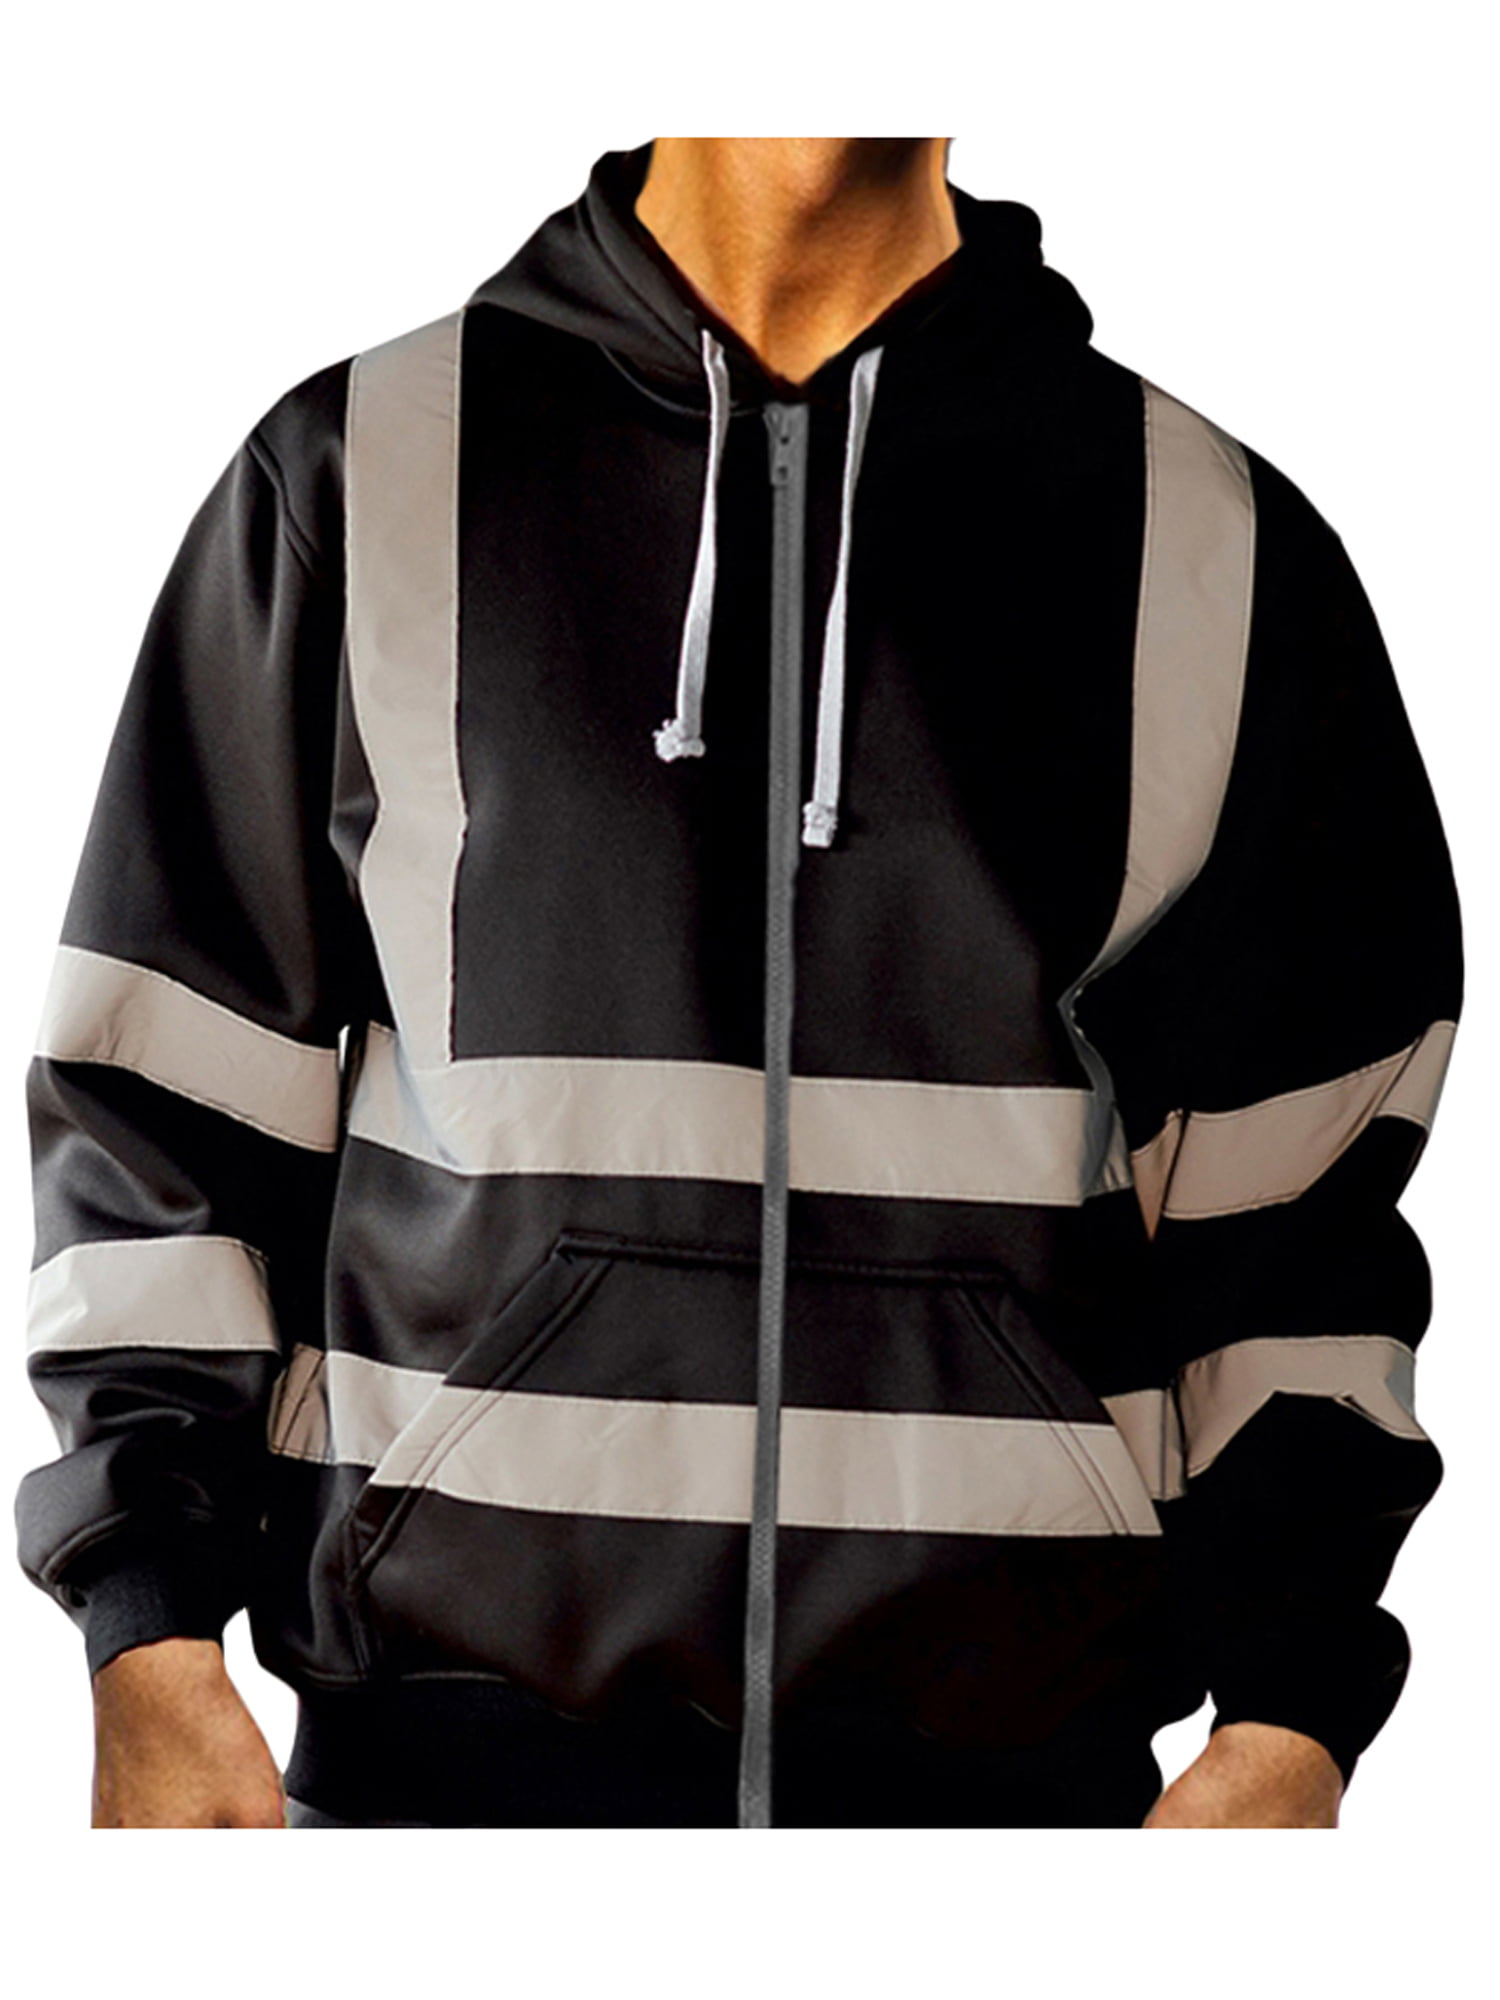 Men Hi Vis Viz Reflective High Visibility Safty Work Hooded Jacket Coat Outwear 